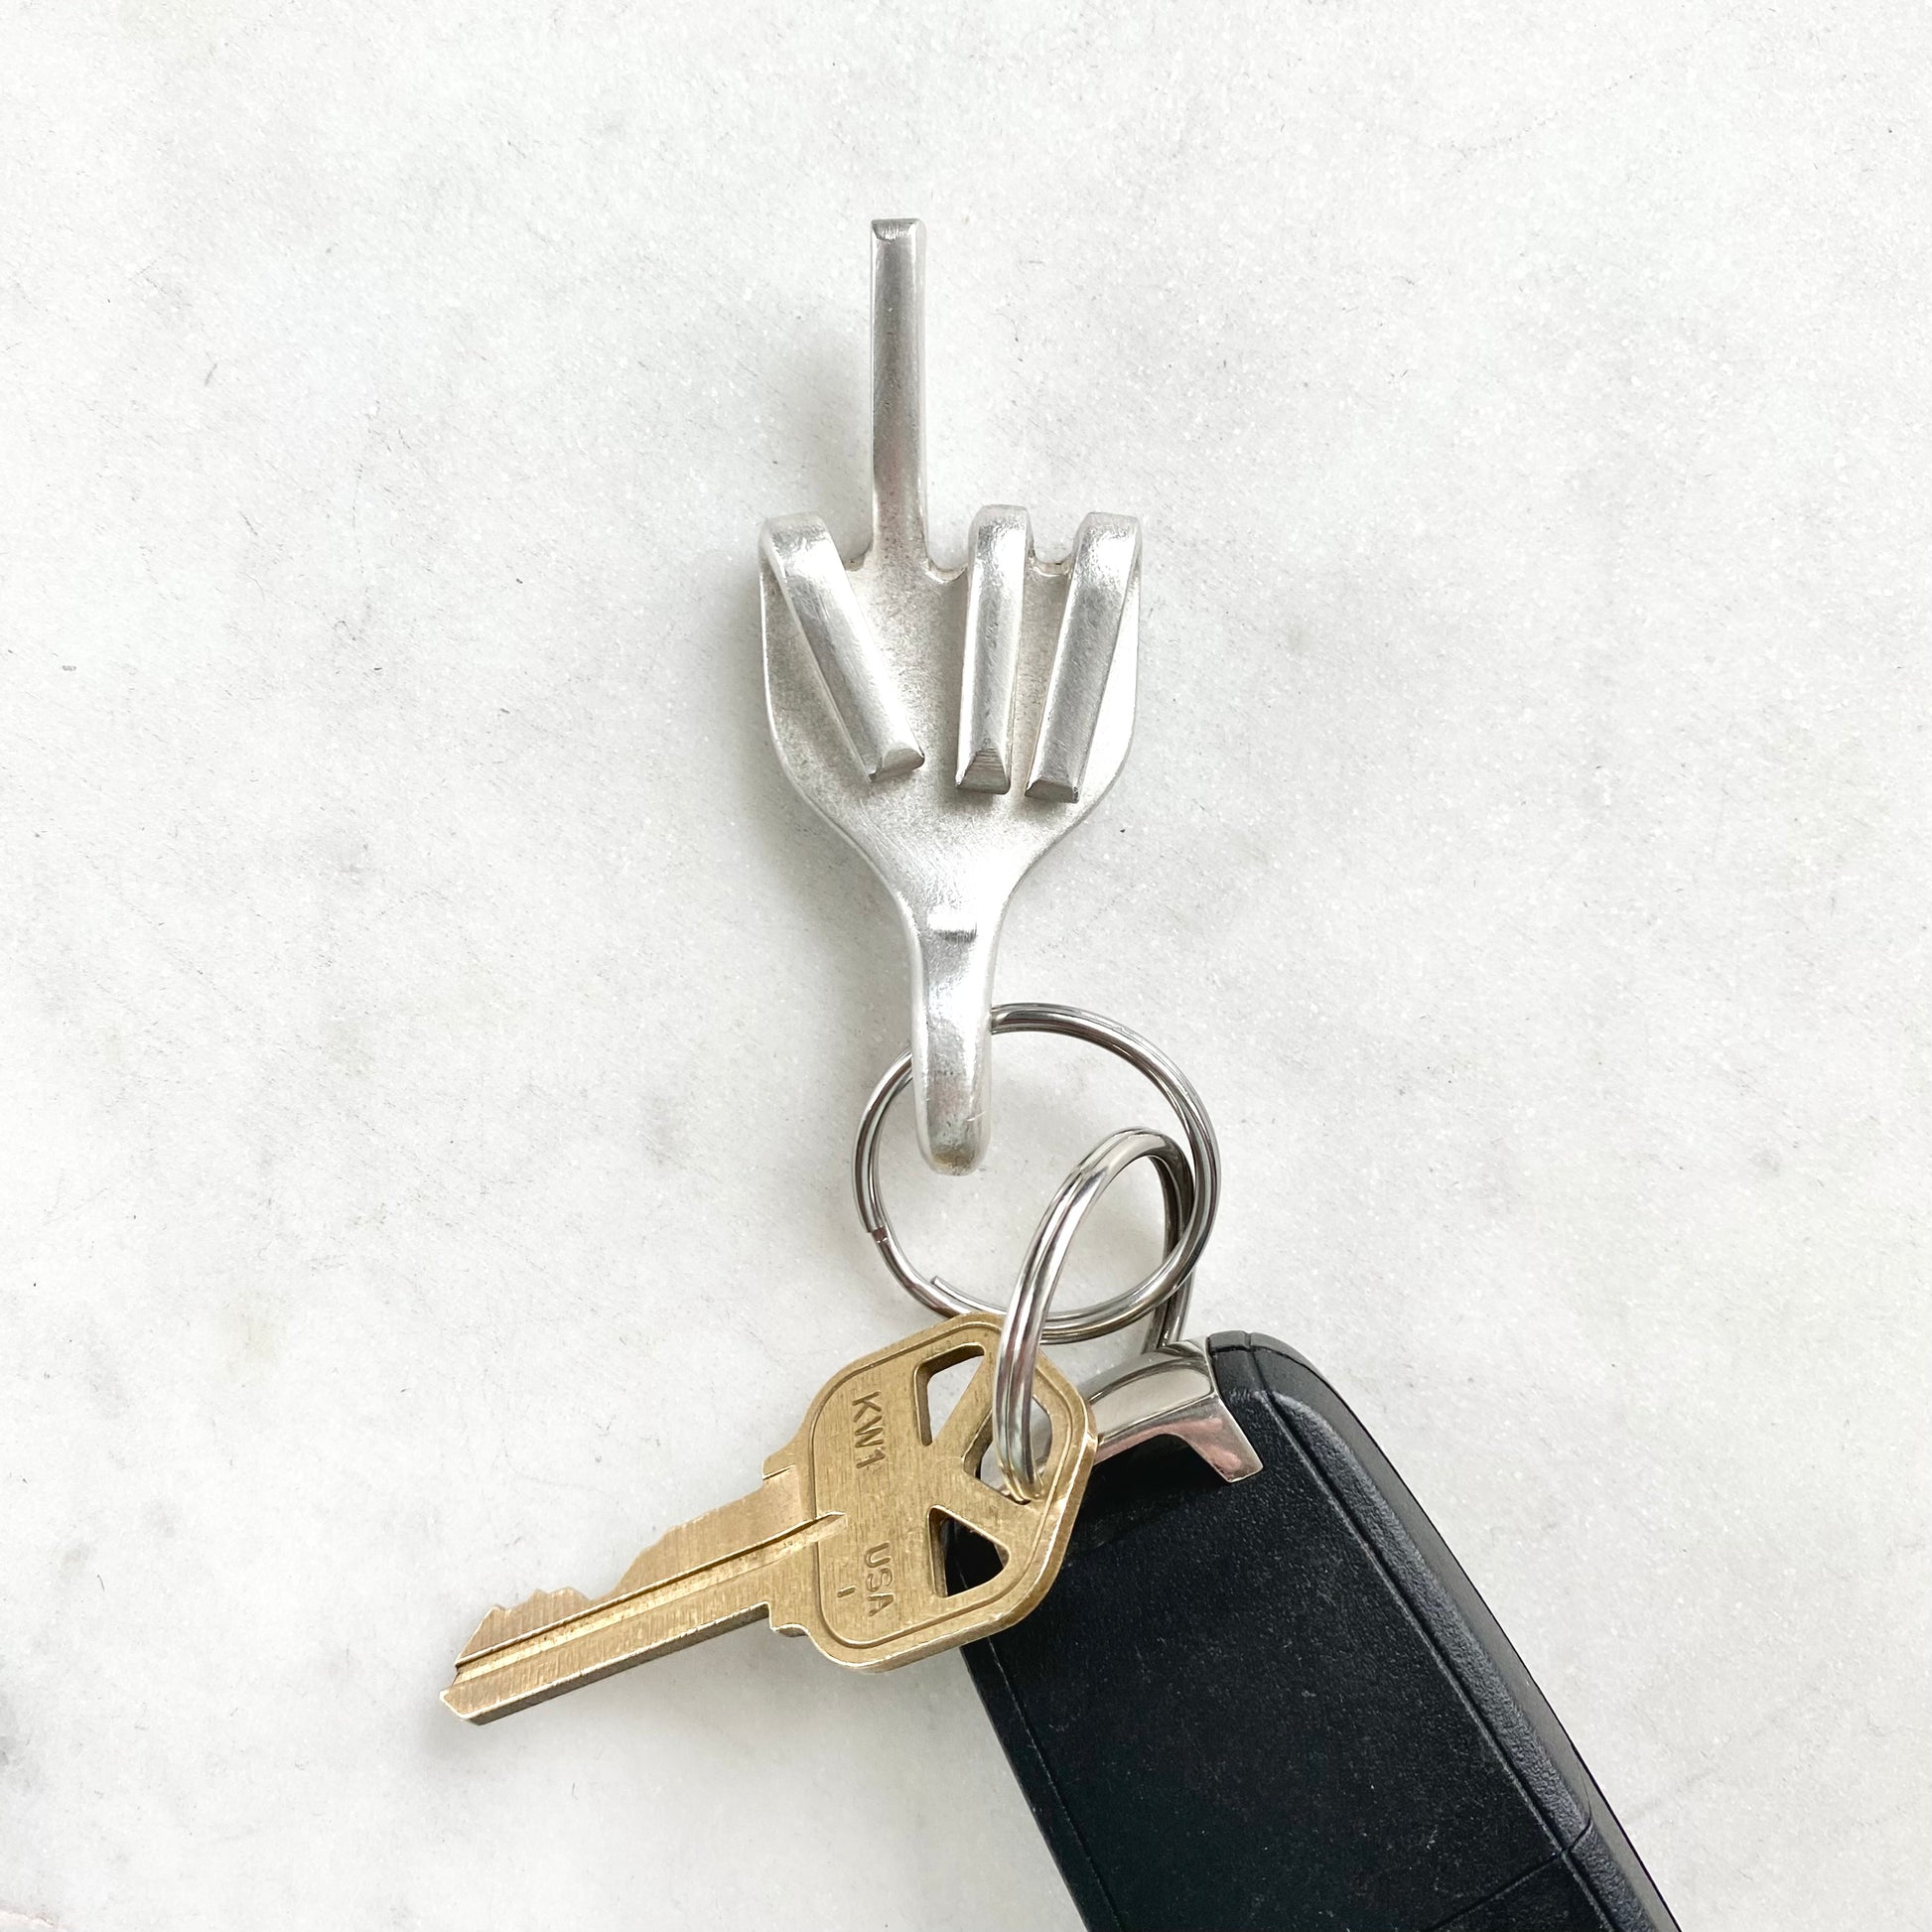 Middle Finger, Fork Mood Keychain, Hand Gesture Keychain, Vintage Silverware Keychain Keychains callistafaye   